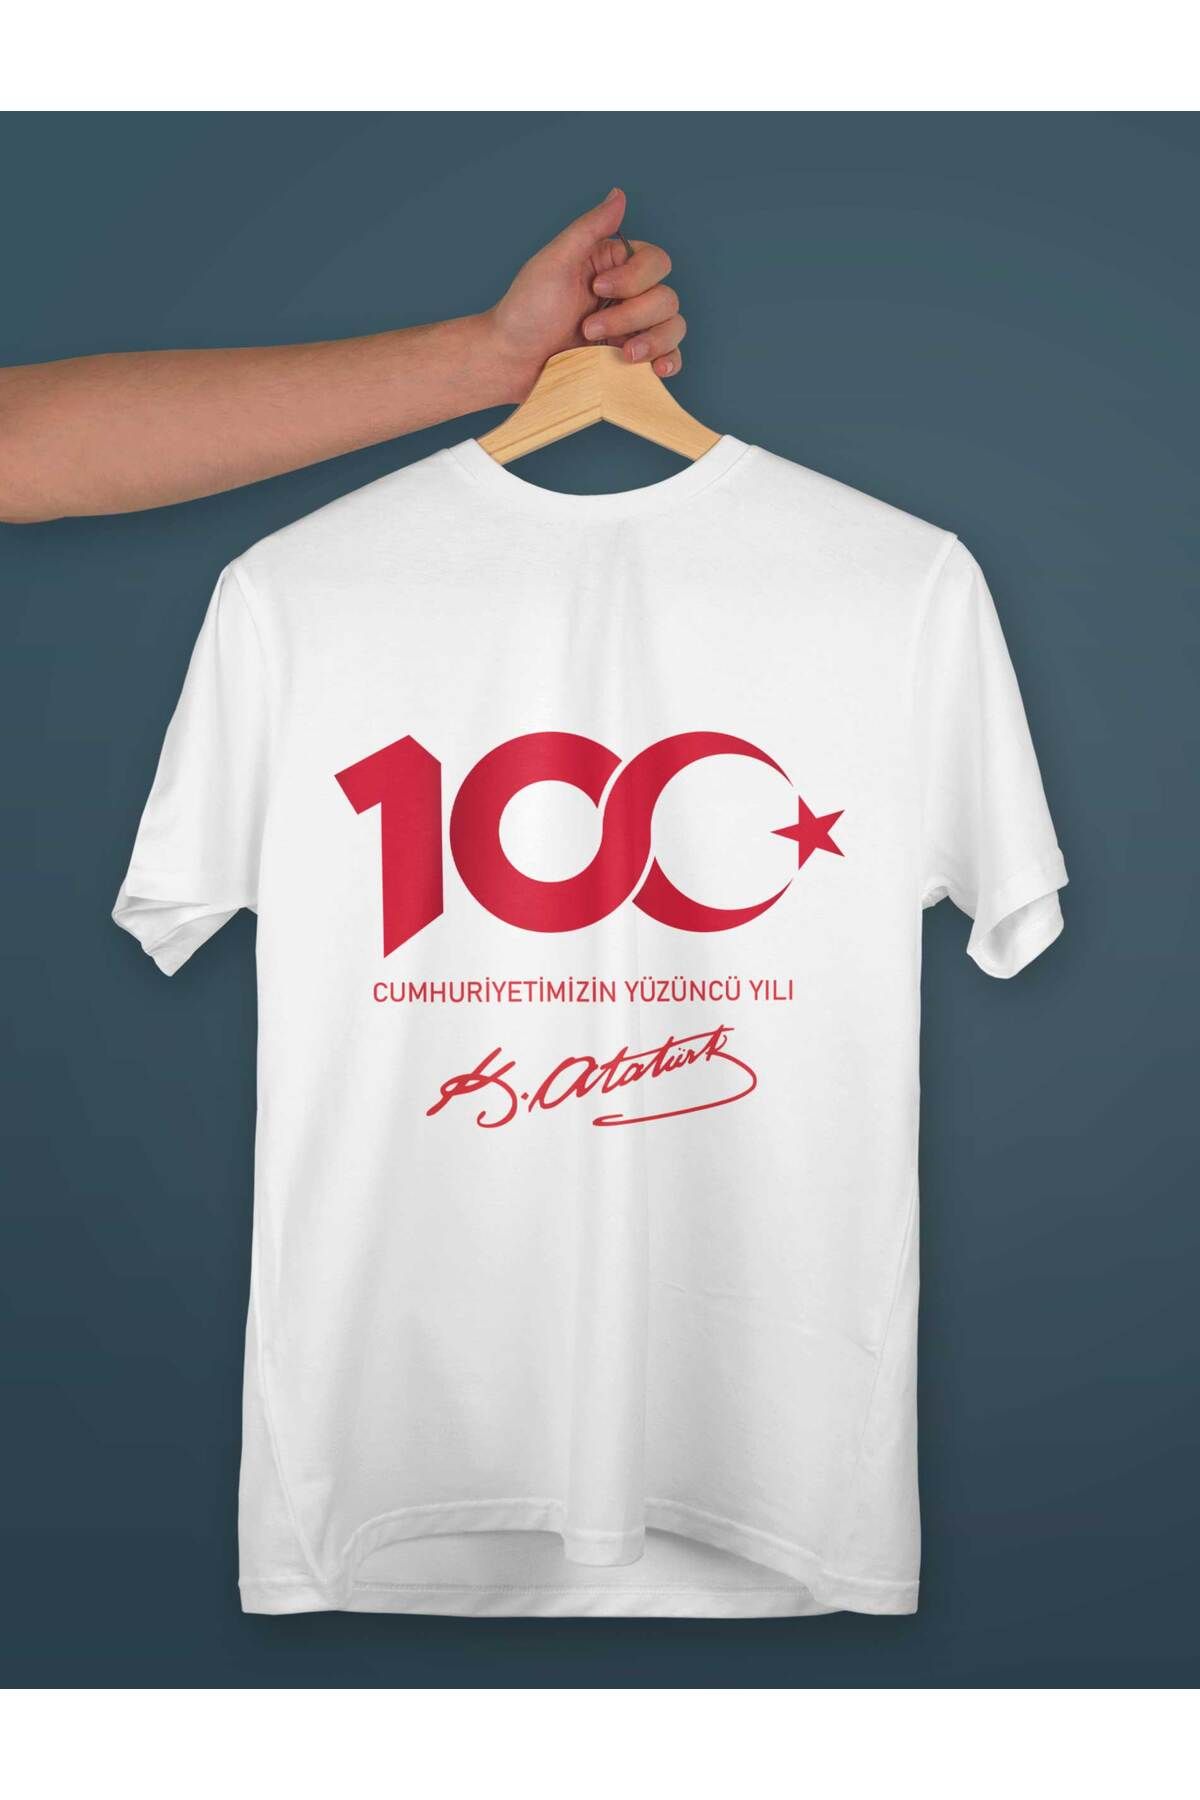 MAHURS Cumhuriyetin Yüzüncü Yılı 100yıl Baskılı Atatürk imza Pamuklu Tişört Çocuk Yetişkin Tişörtü